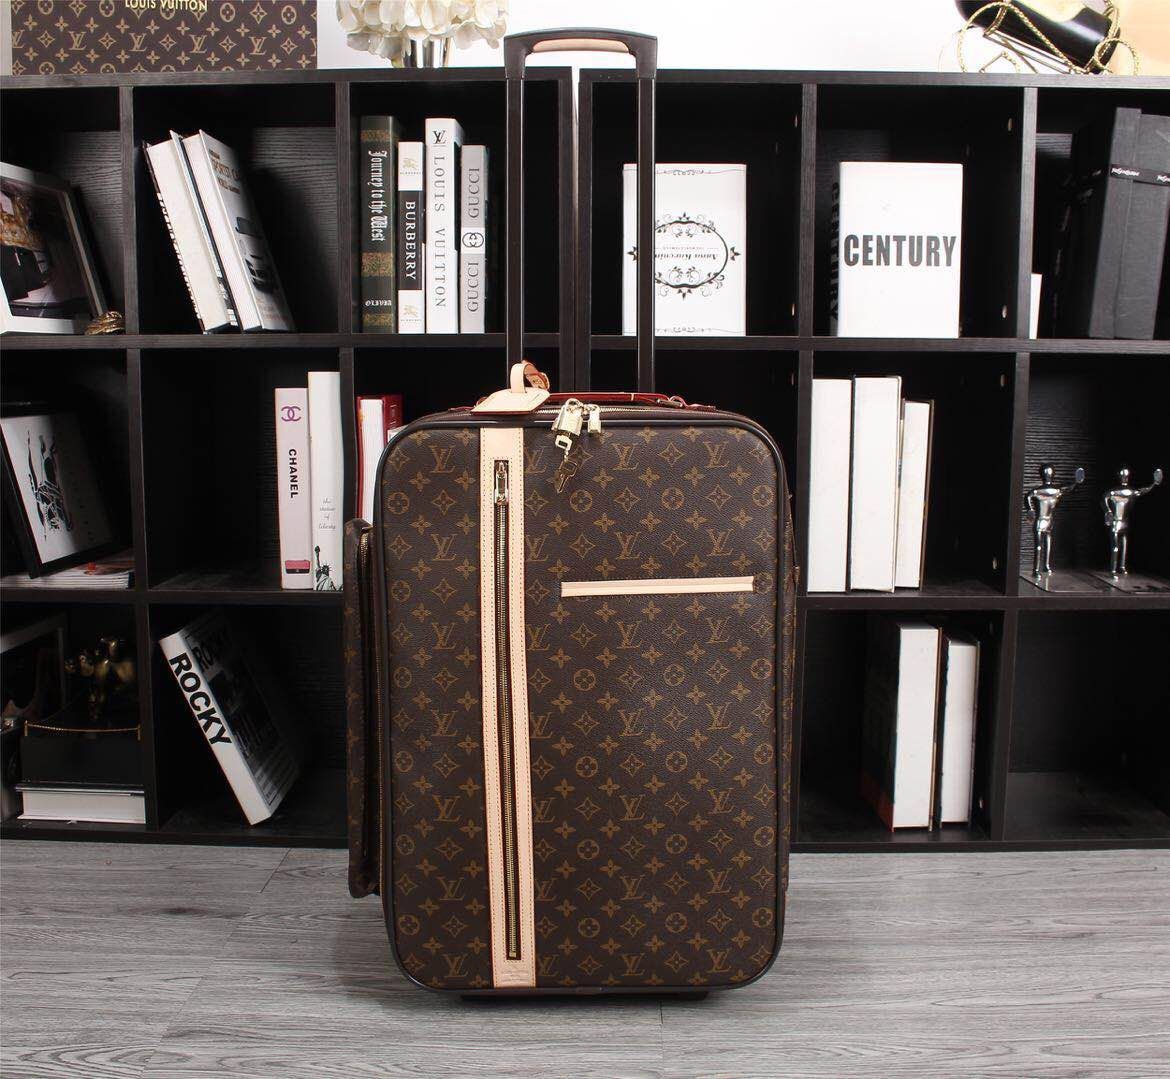 Louis Vuitton 3 Piece Bag Dhgate Gucci